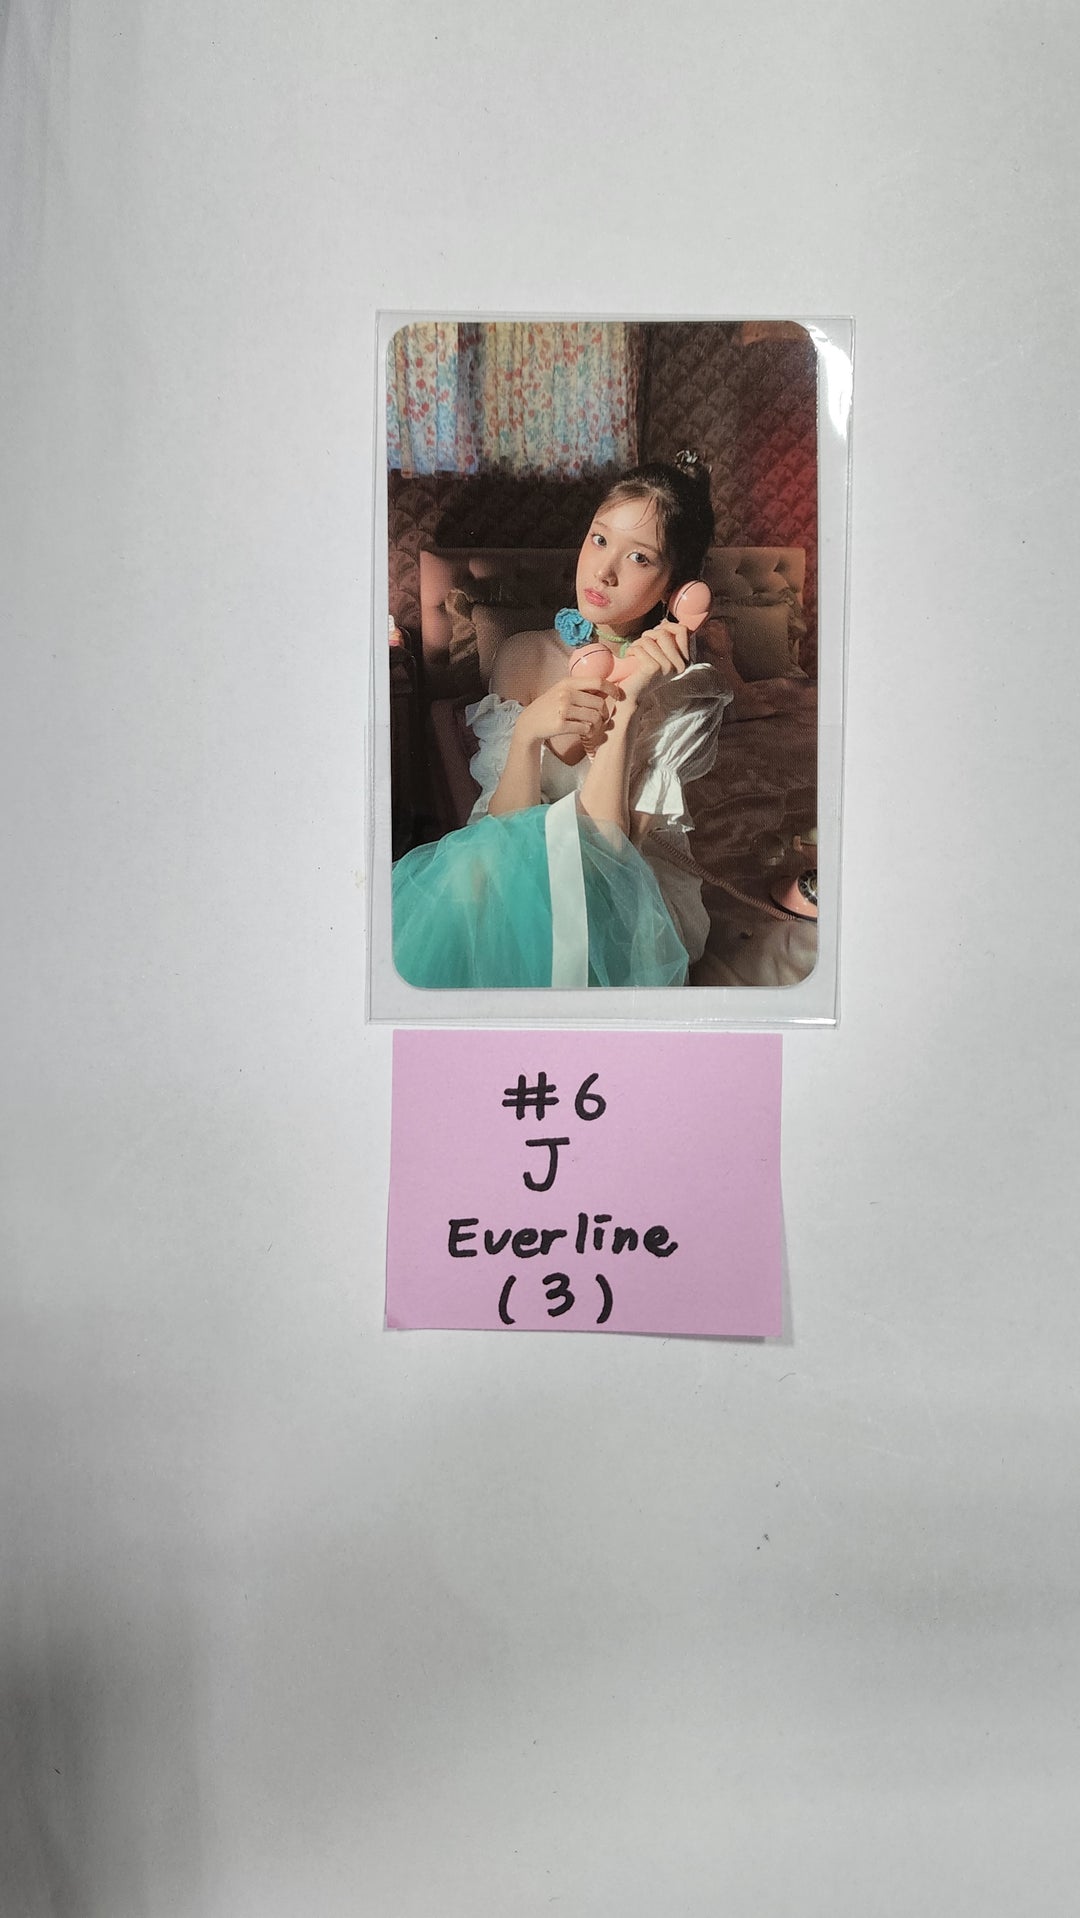 스테이씨 'WE NEED LOVE' - 에버라인 럭키드로우 이벤트 포토카드